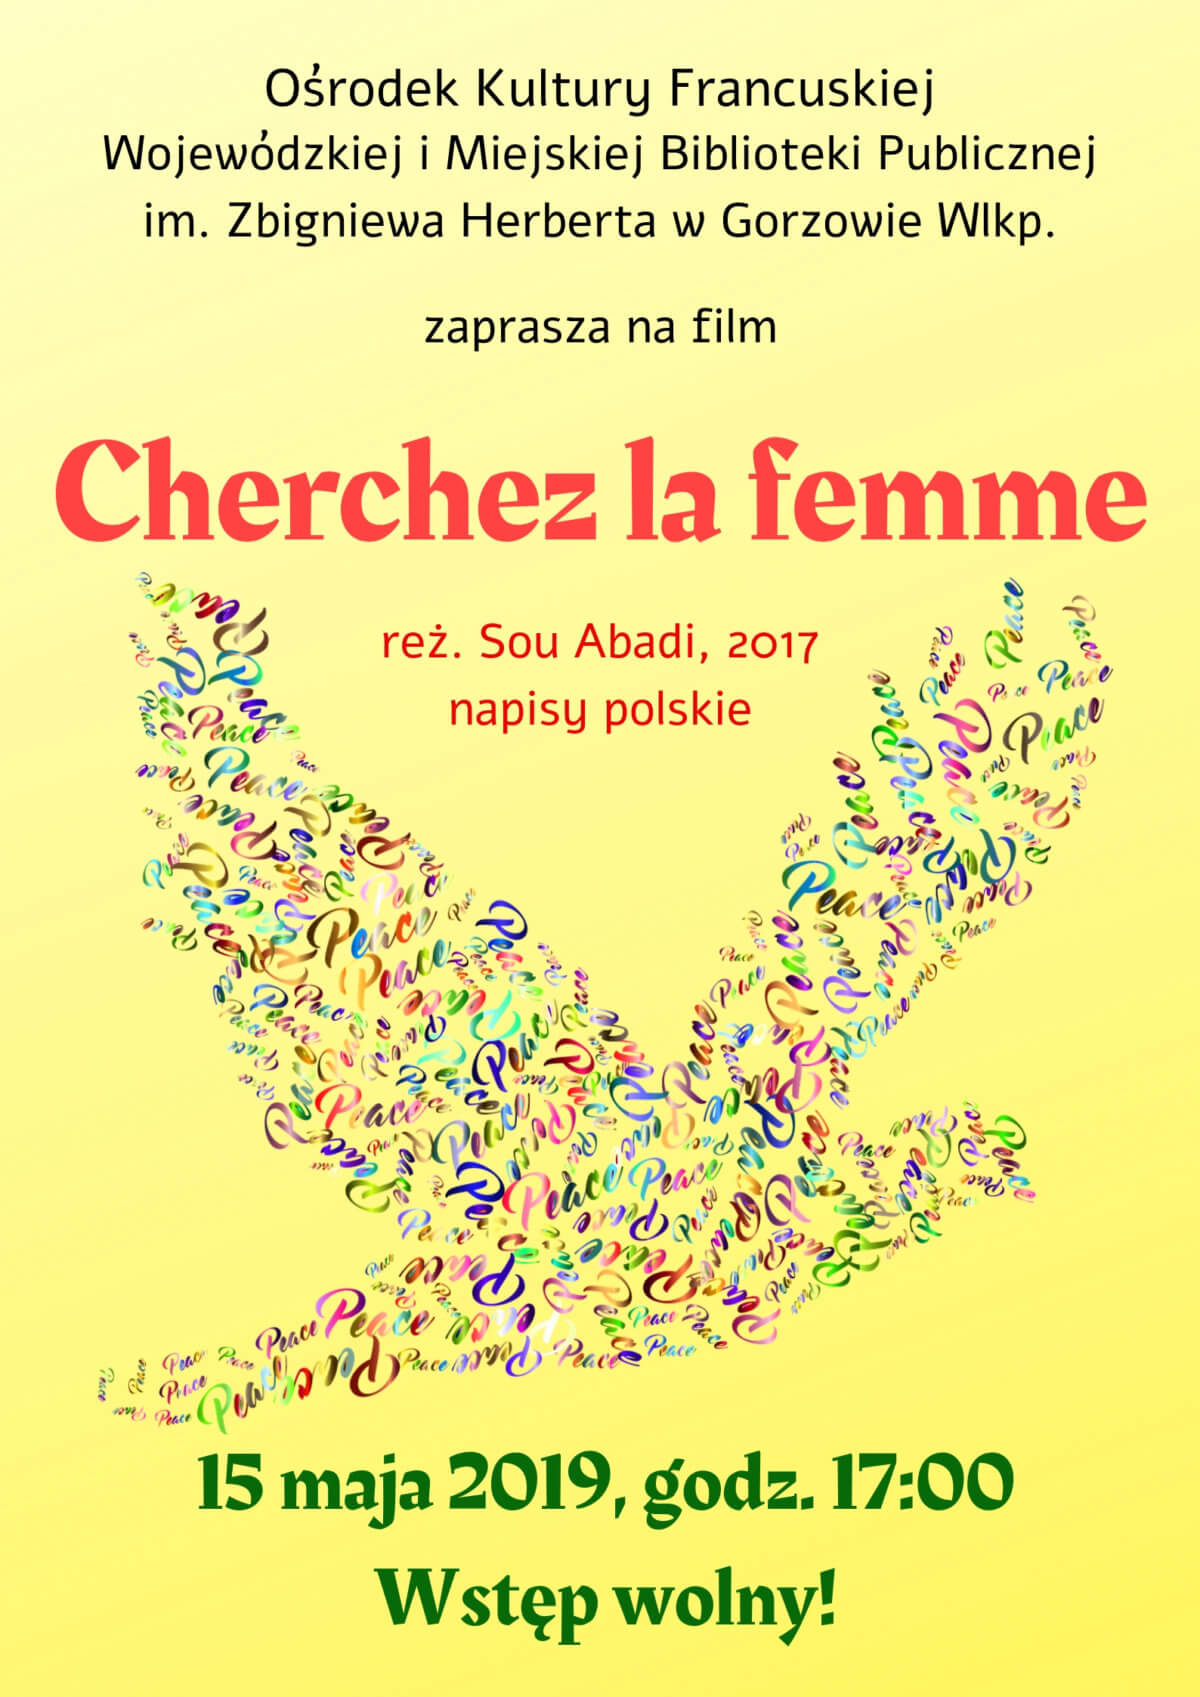 15 maja 2019 r. o godzinie 17:00 Ośrodek Kultury Francuskiej zaprasza na projekcję komedii "Cherchez la femme". Film wyświetlony zostanie z polskimi napisami.